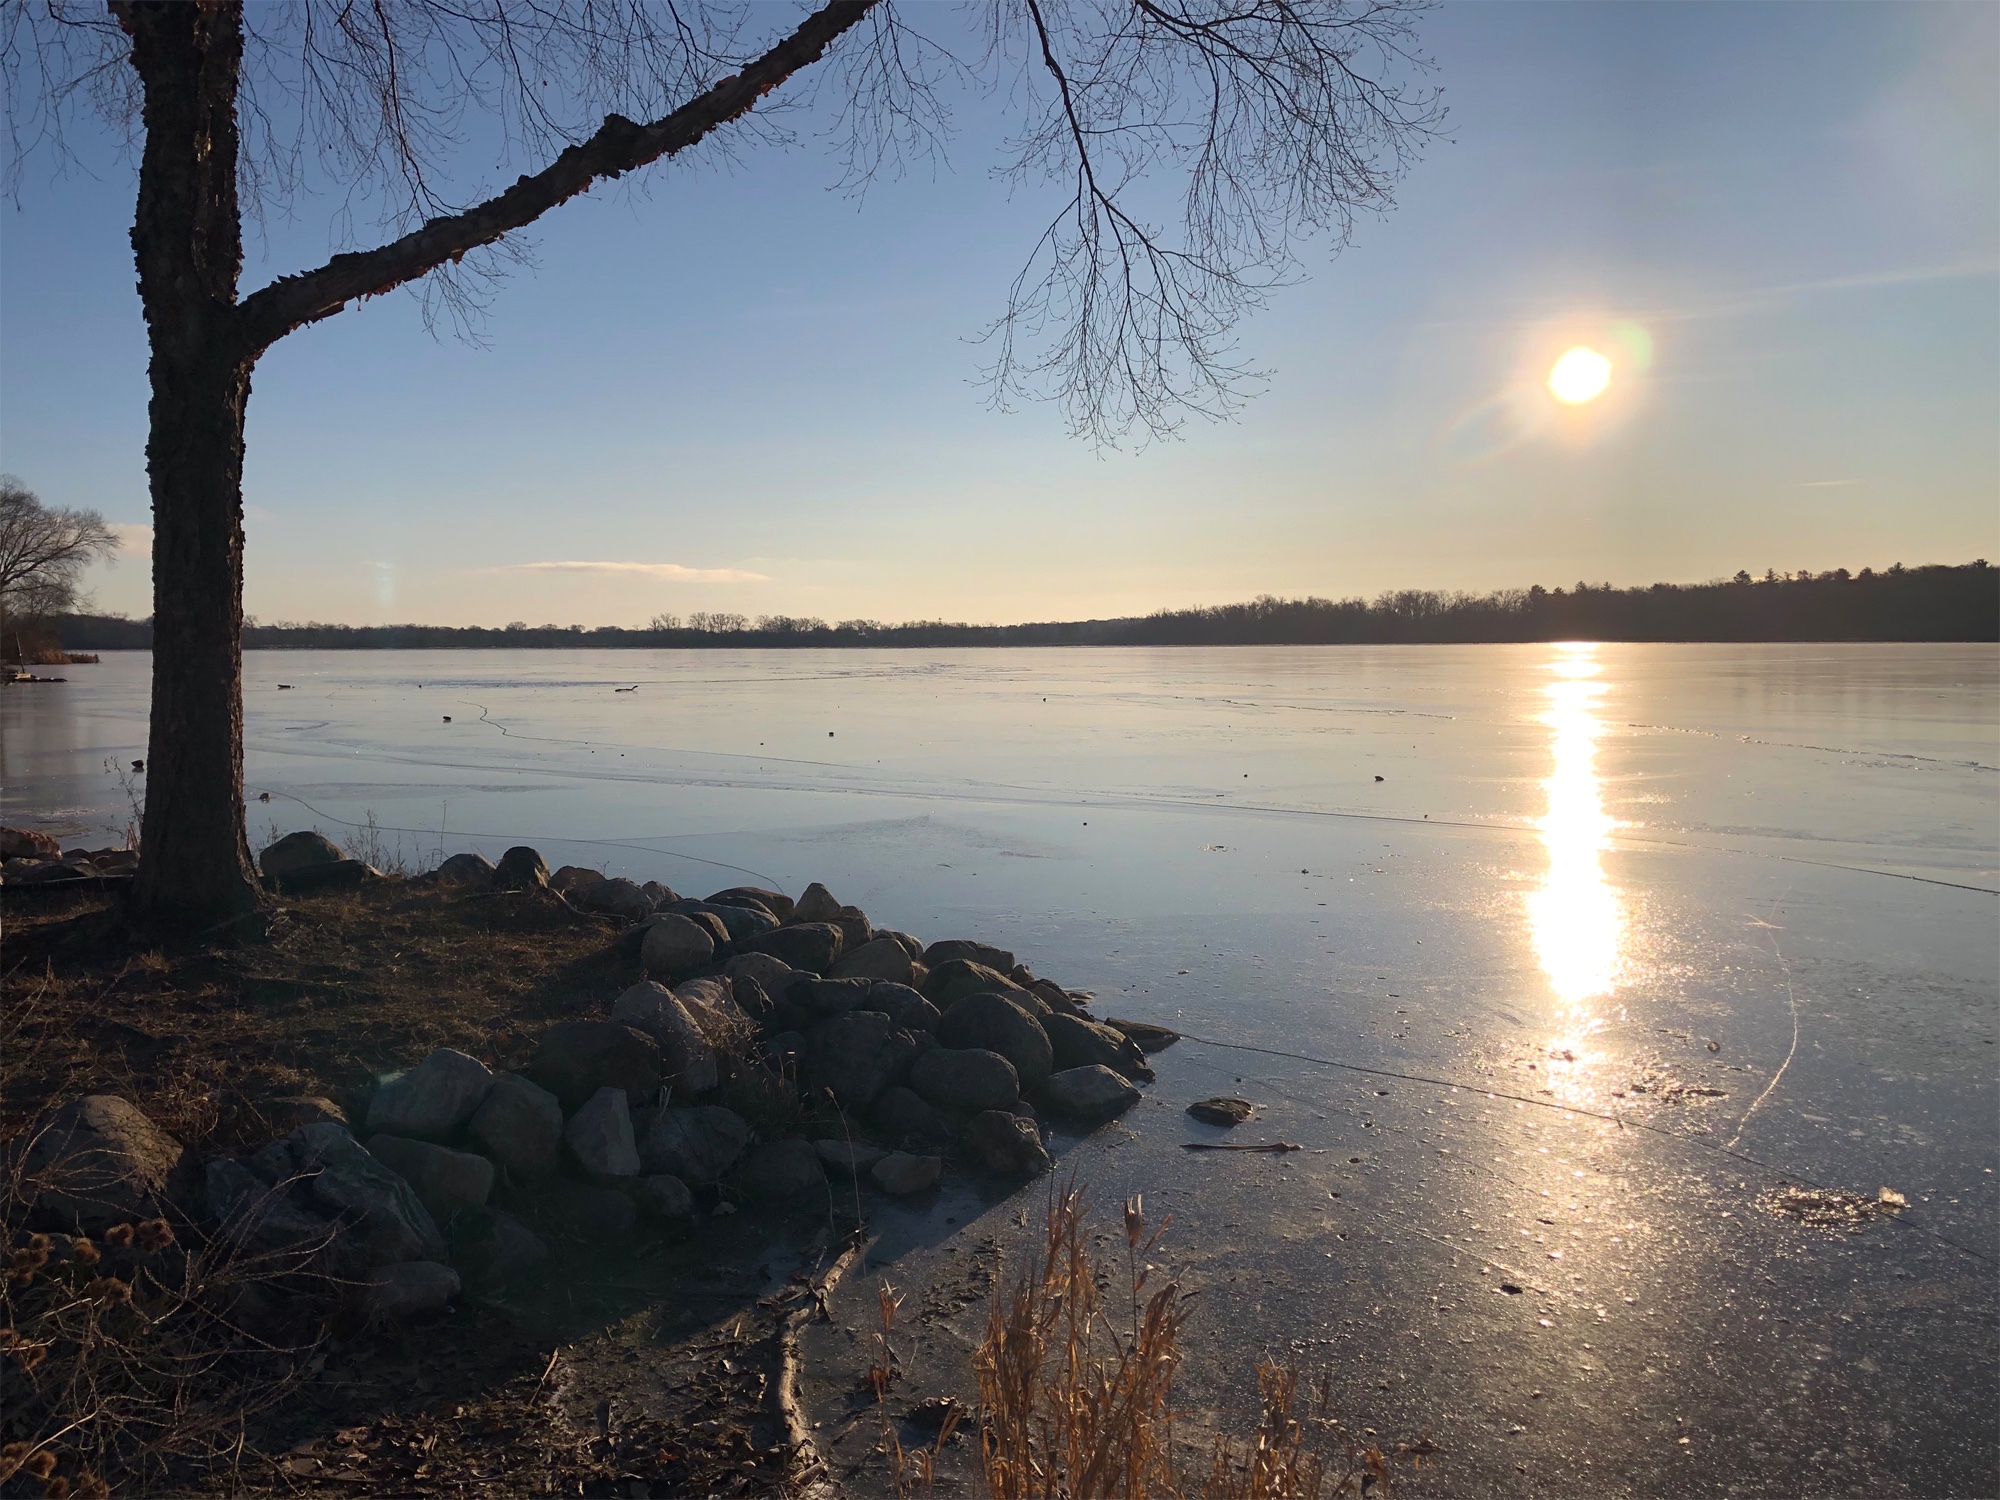 Lake Wingra on December 15, 2019.